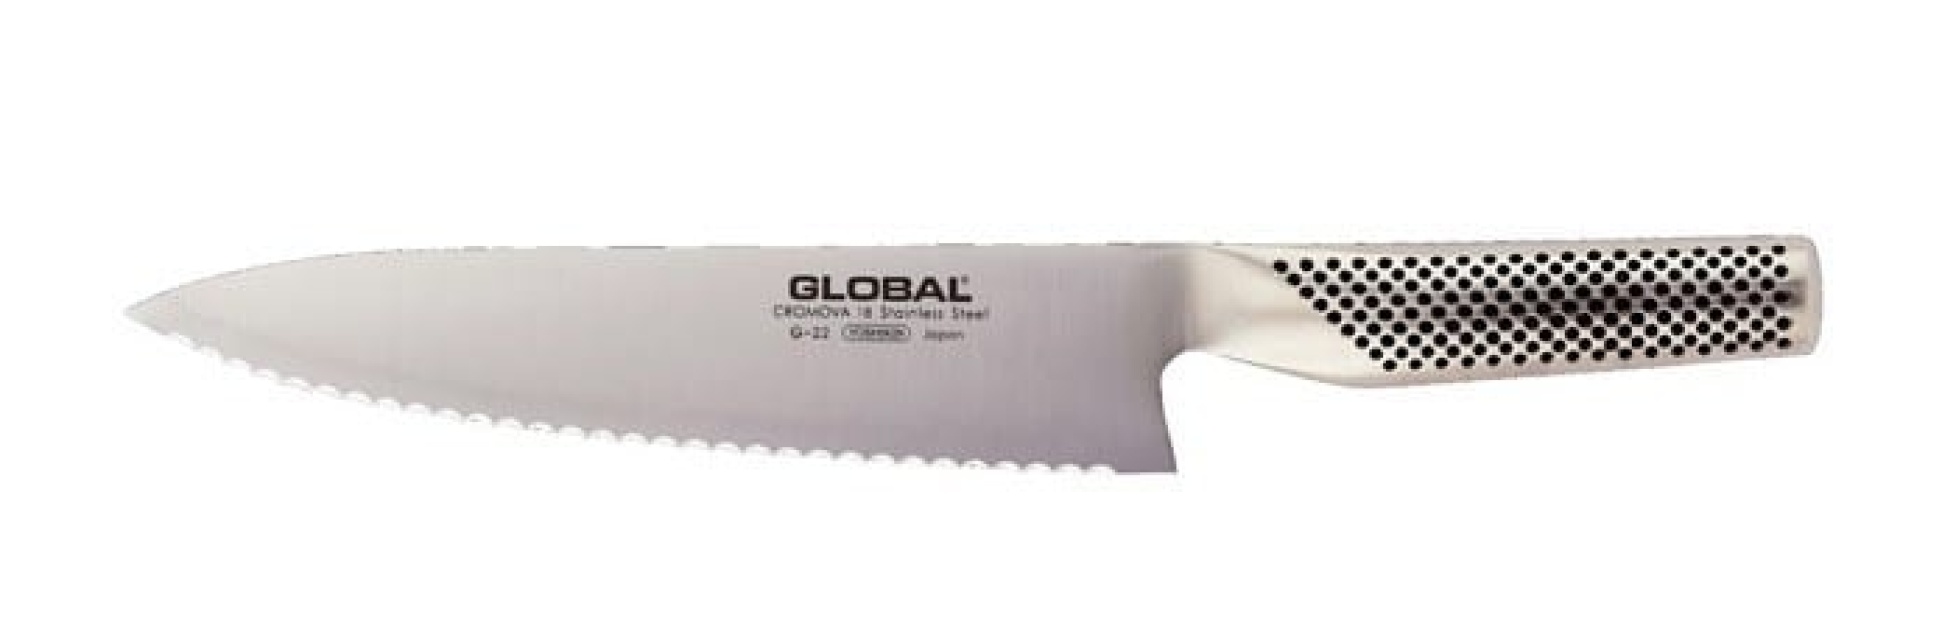 Brödkniv G-22, 20cm - Global